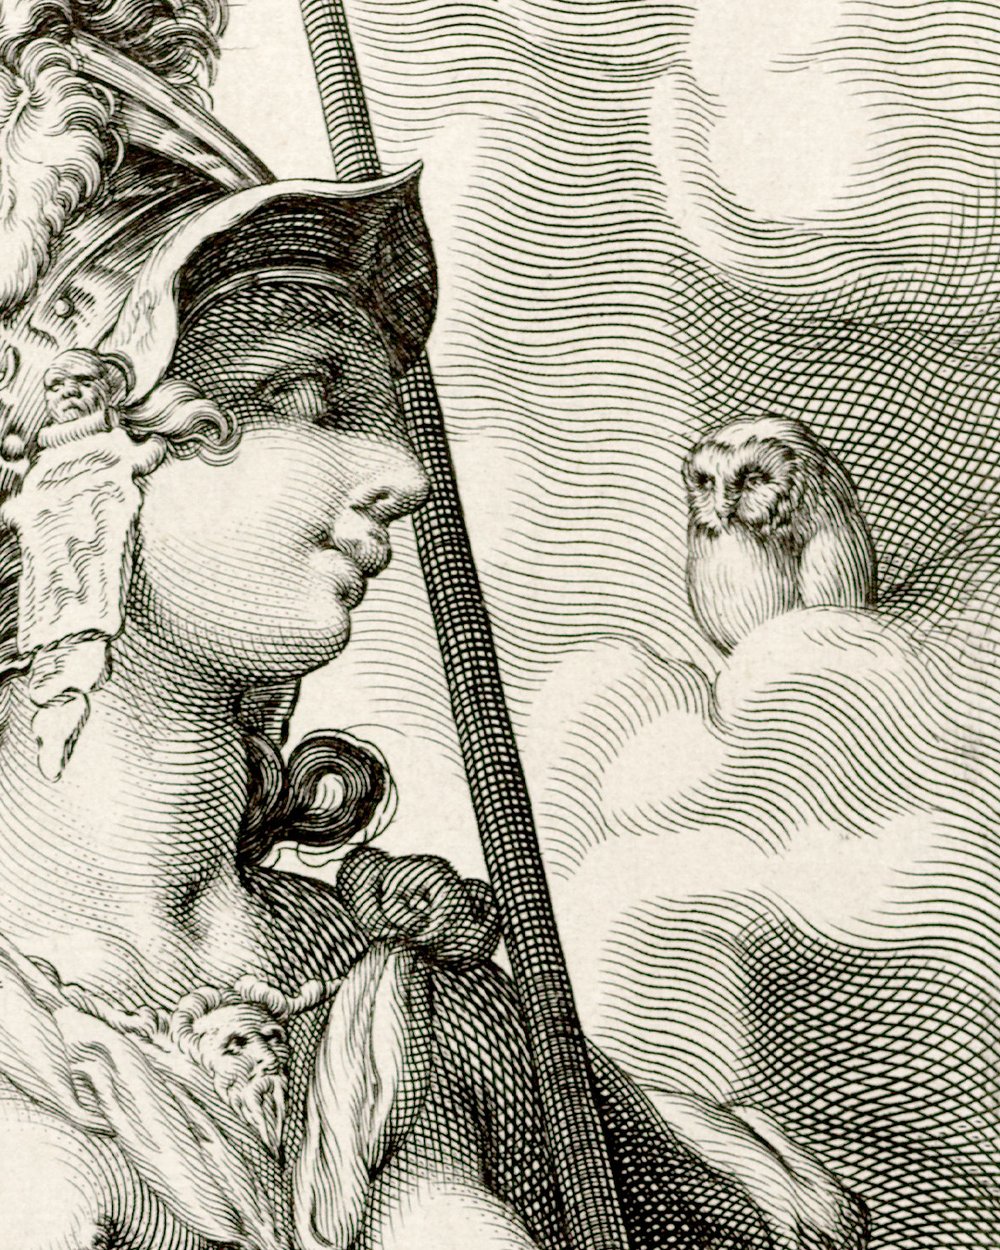 Minerva (1575 - 1607)